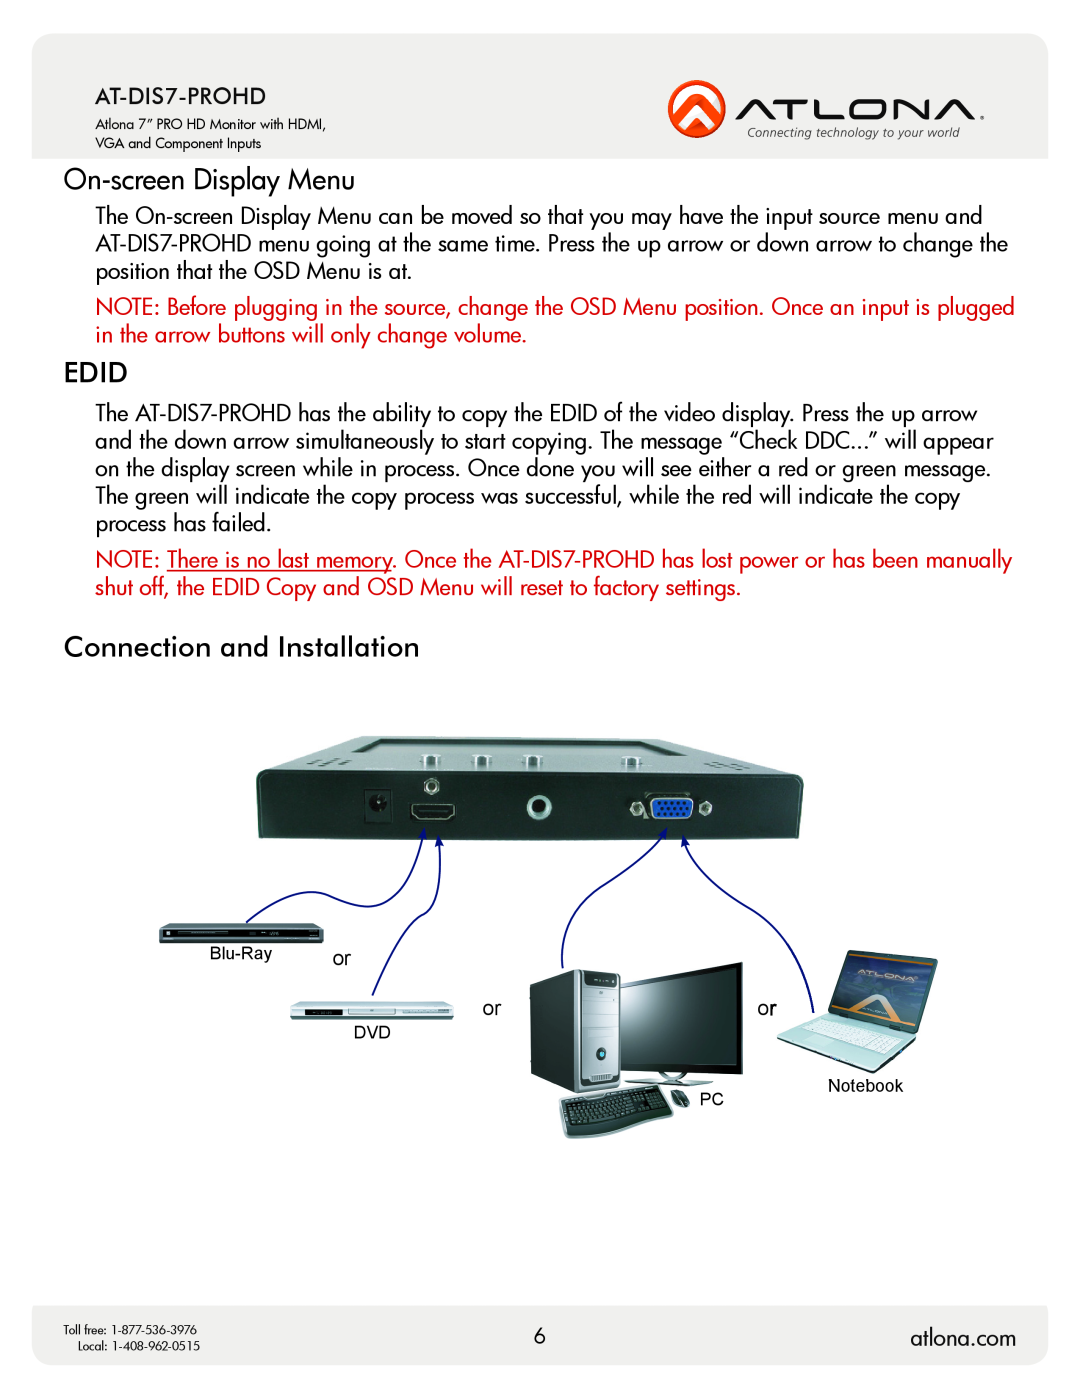 Atlona AT-DIS7-PROHD user manual On-screen Display Menu, Edid, Connection and Installation, atlona.com 